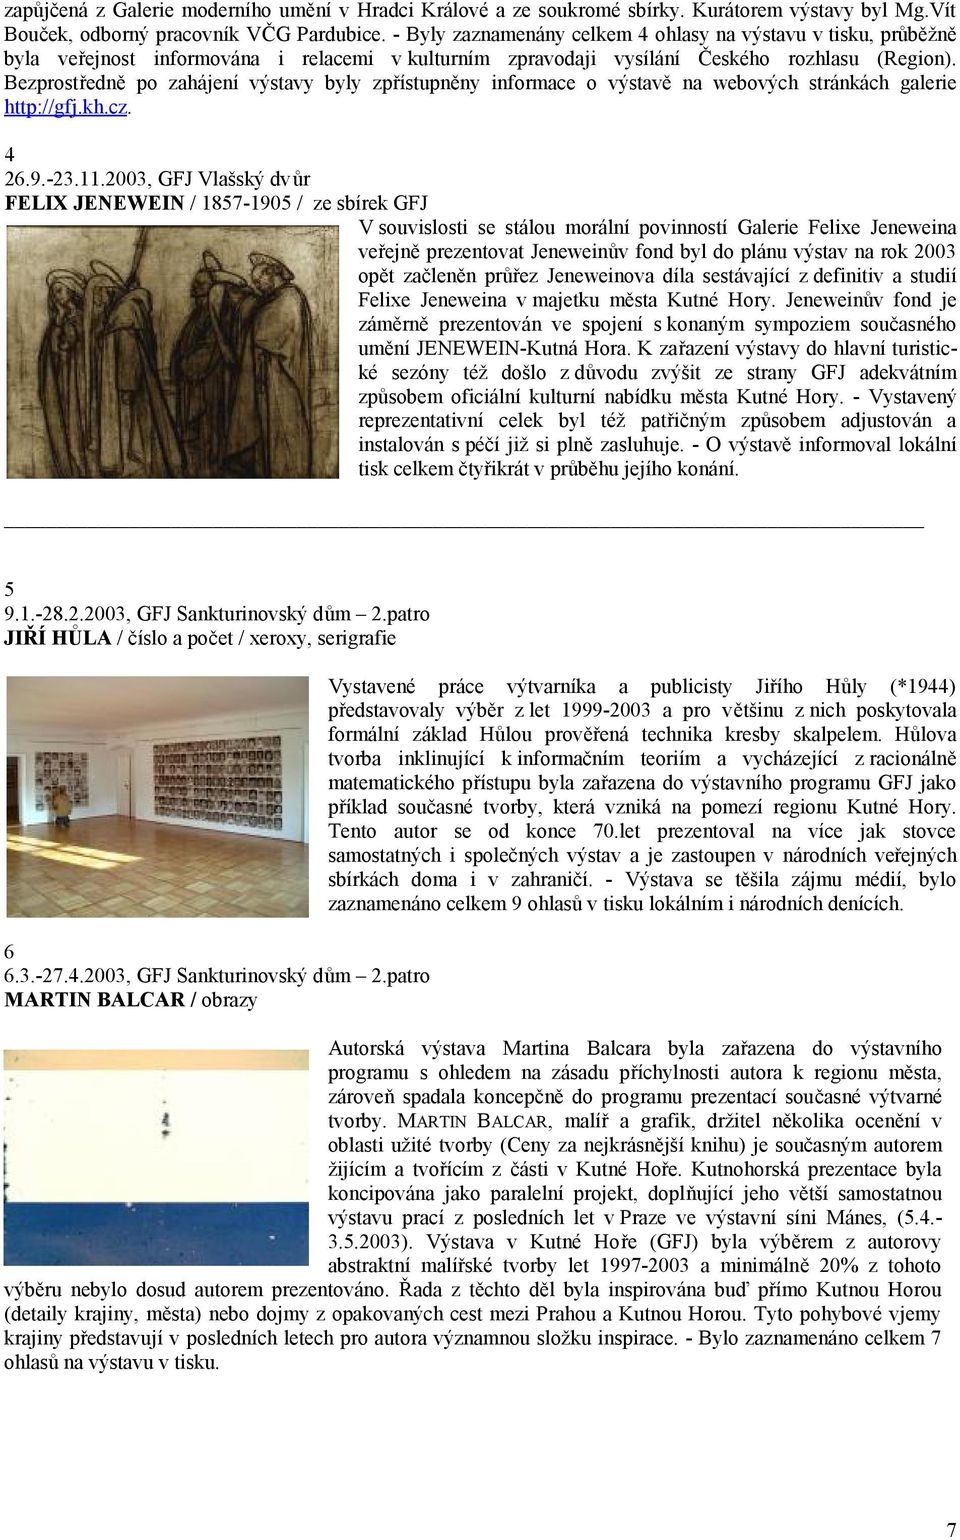 Bezprostředně po zahájení výstavy byly zpřístupněny informace o výstavě na webových stránkách galerie http://gfj.kh.cz. 4 26.9.-23.11.